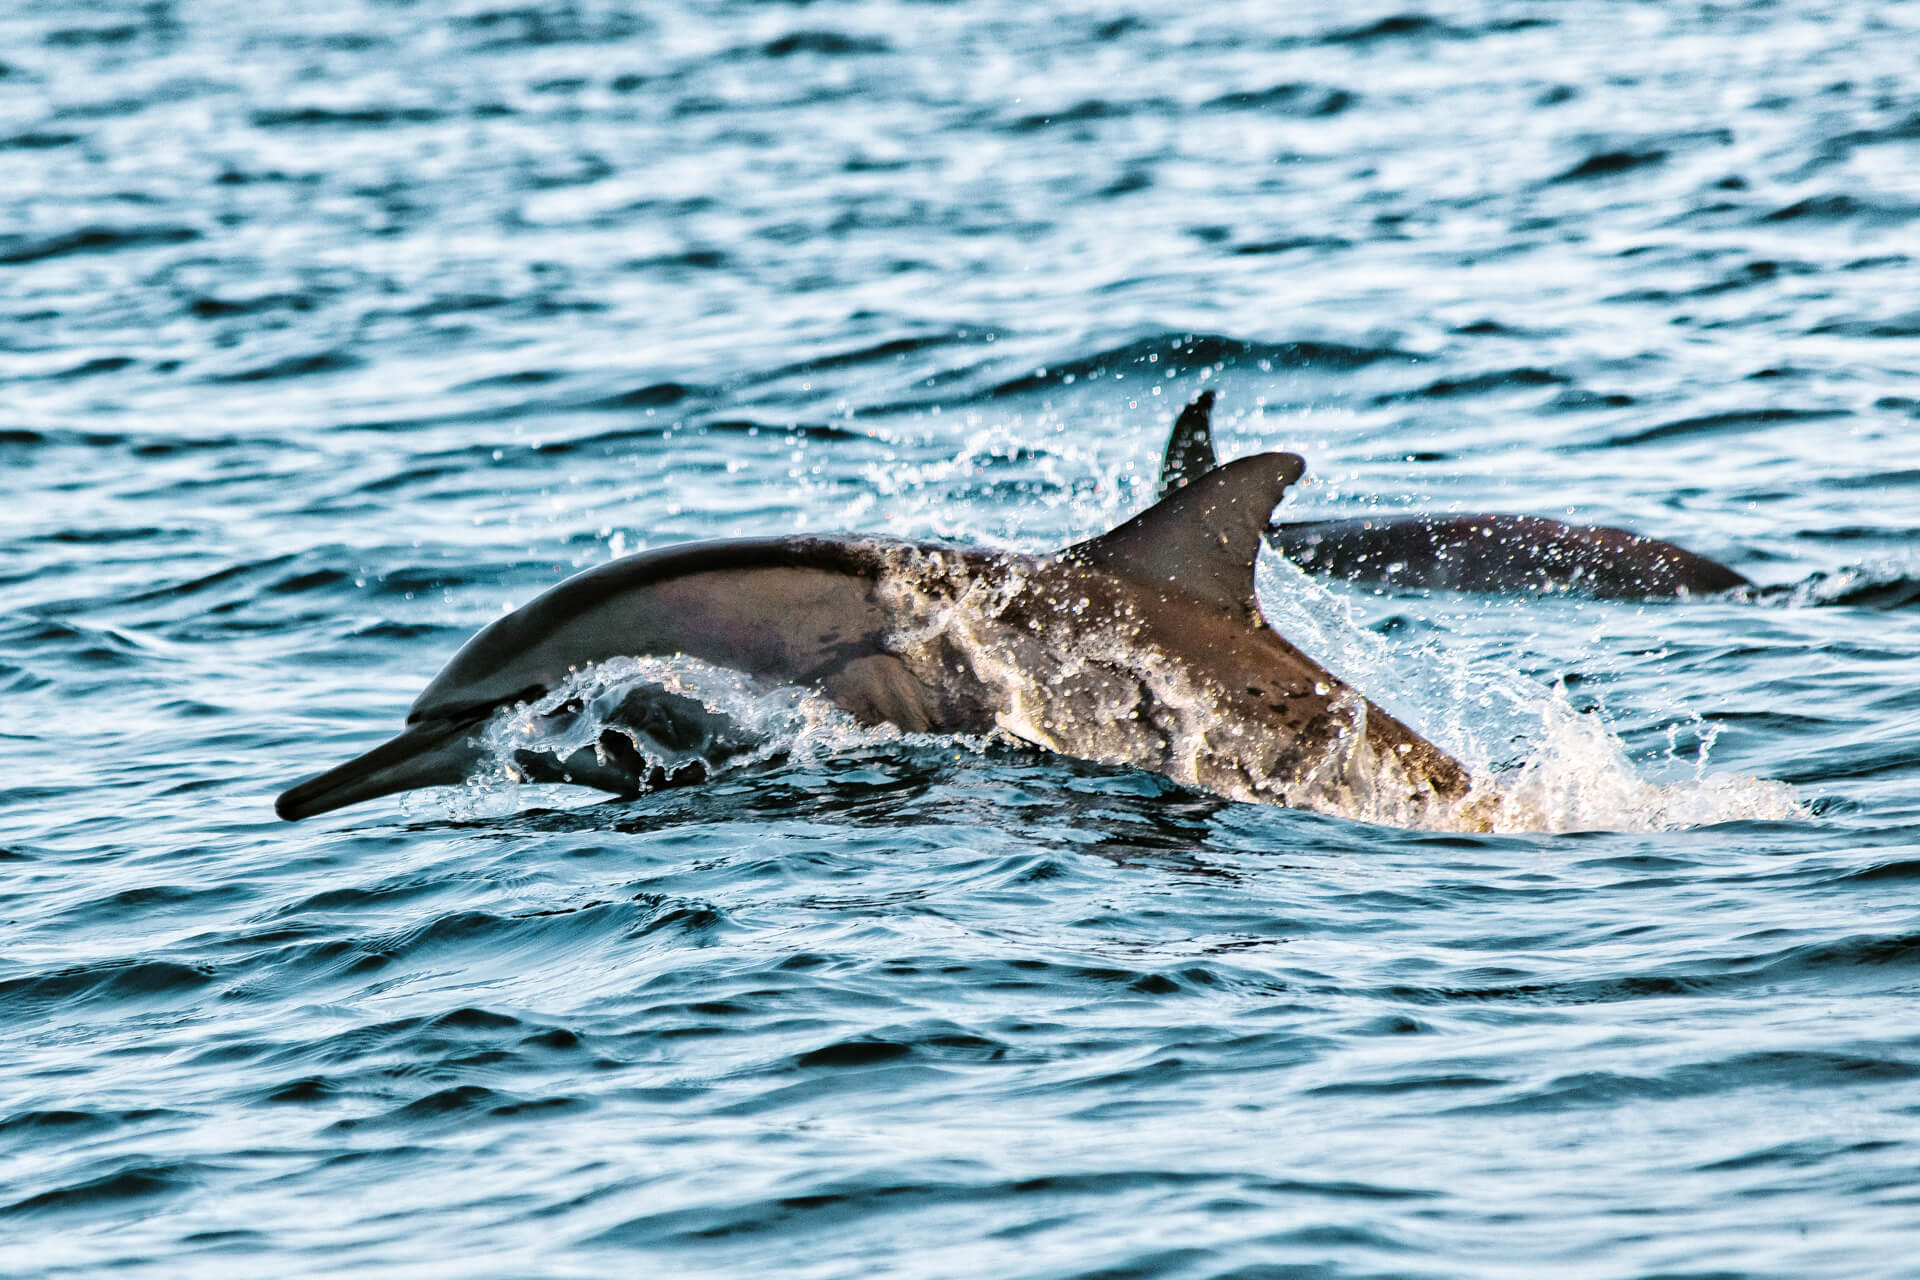 lovina beach bali dolphins